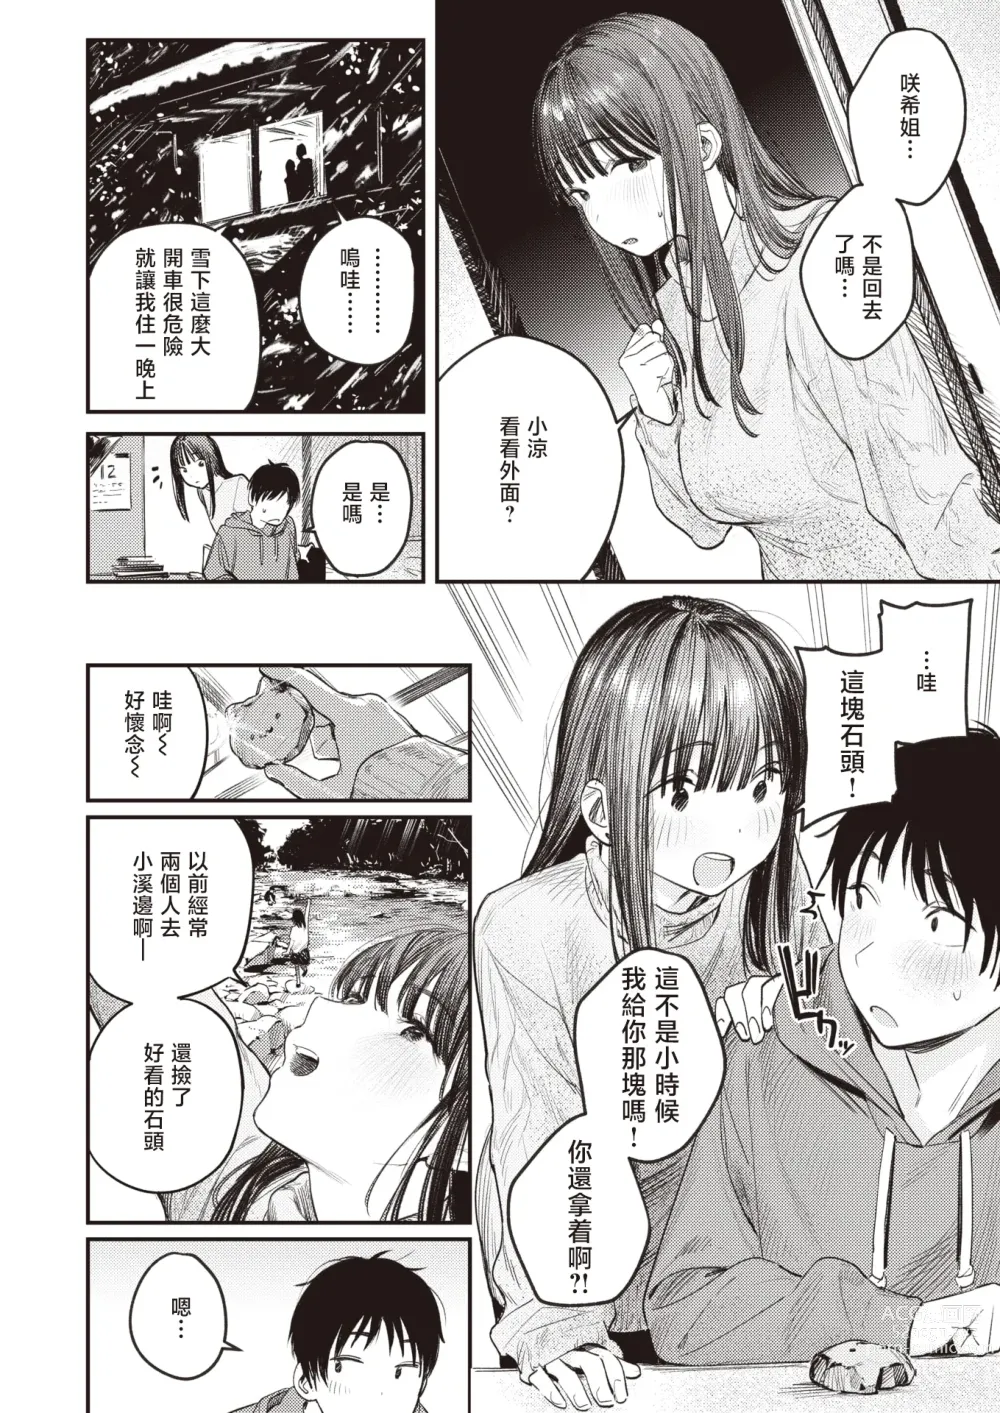 Page 5 of manga 直到雾释冰融